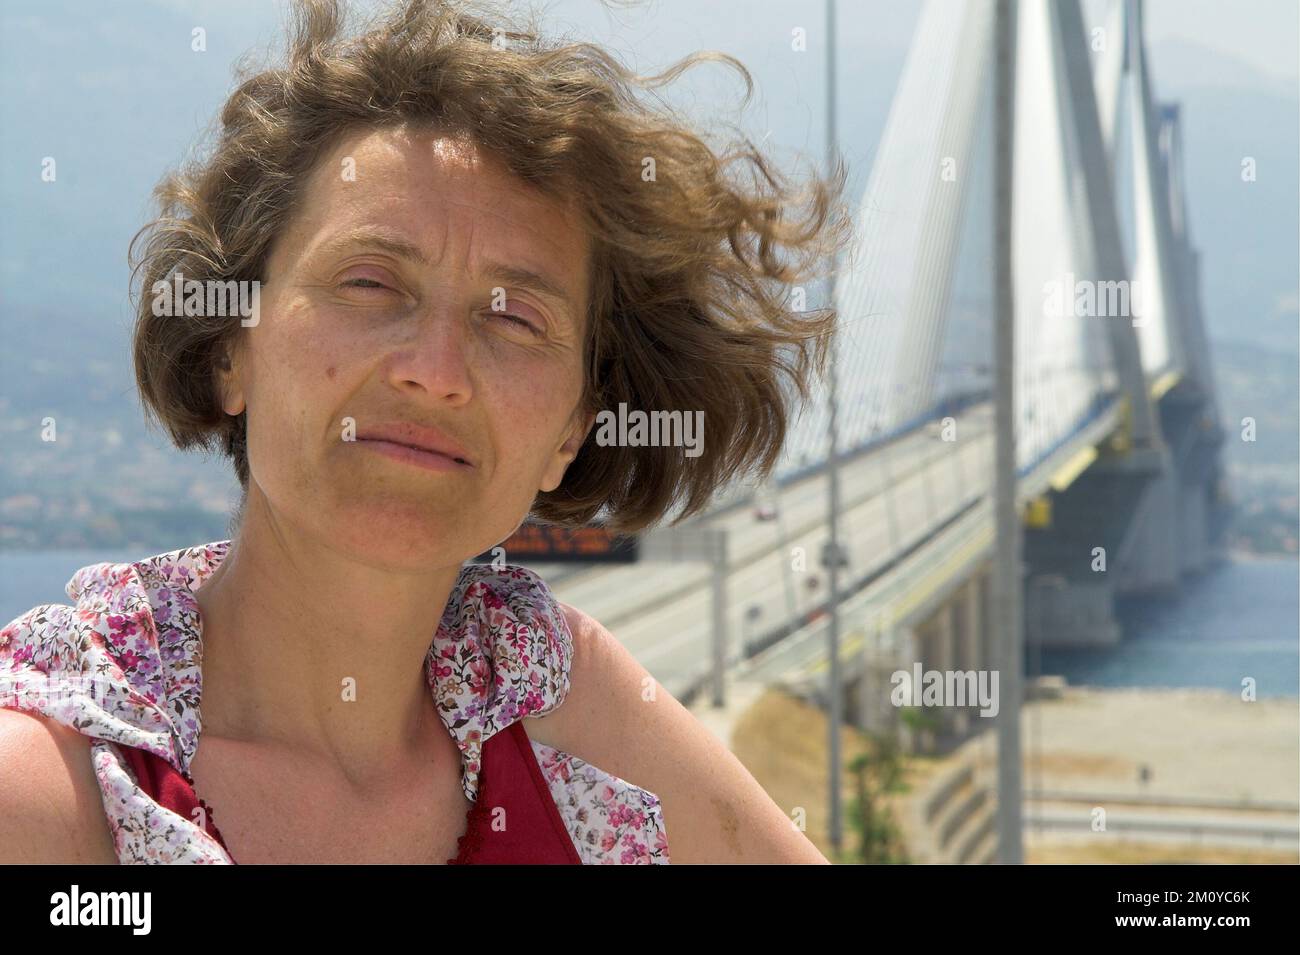 Grecja, Greece, Griechenland; A woman in front of the Rio-Andirio bridge; Eine Frau vor der Rio-Andirio-Brücke; Una mujer frente al puente Rio-Andirio Stock Photo